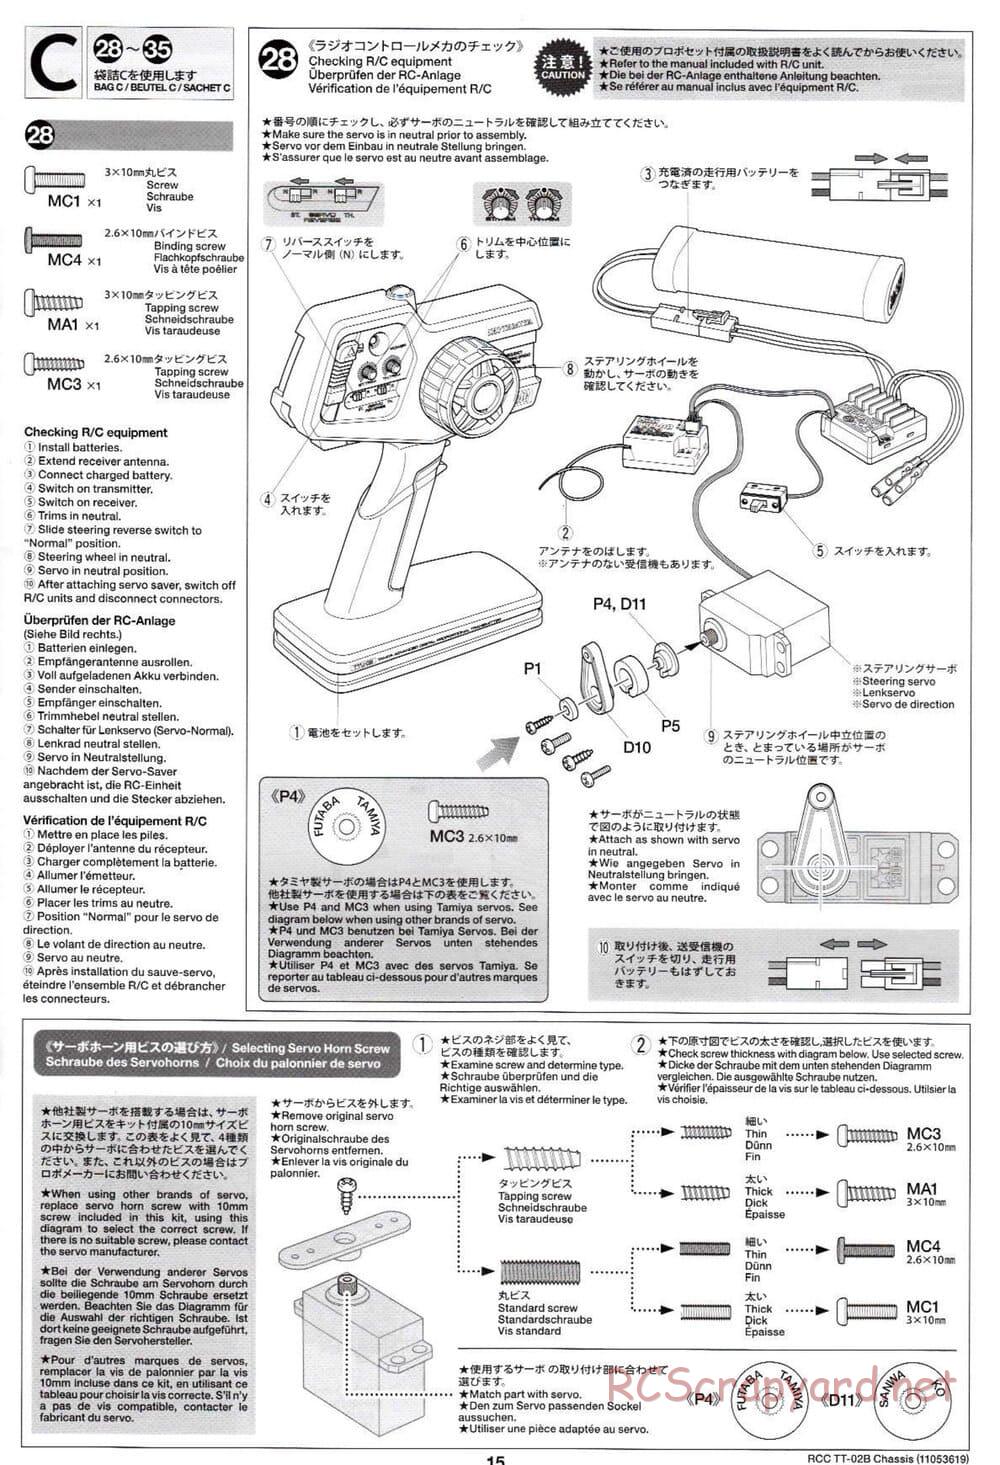 Tamiya - TT-02B Chassis - Manual - Page 19